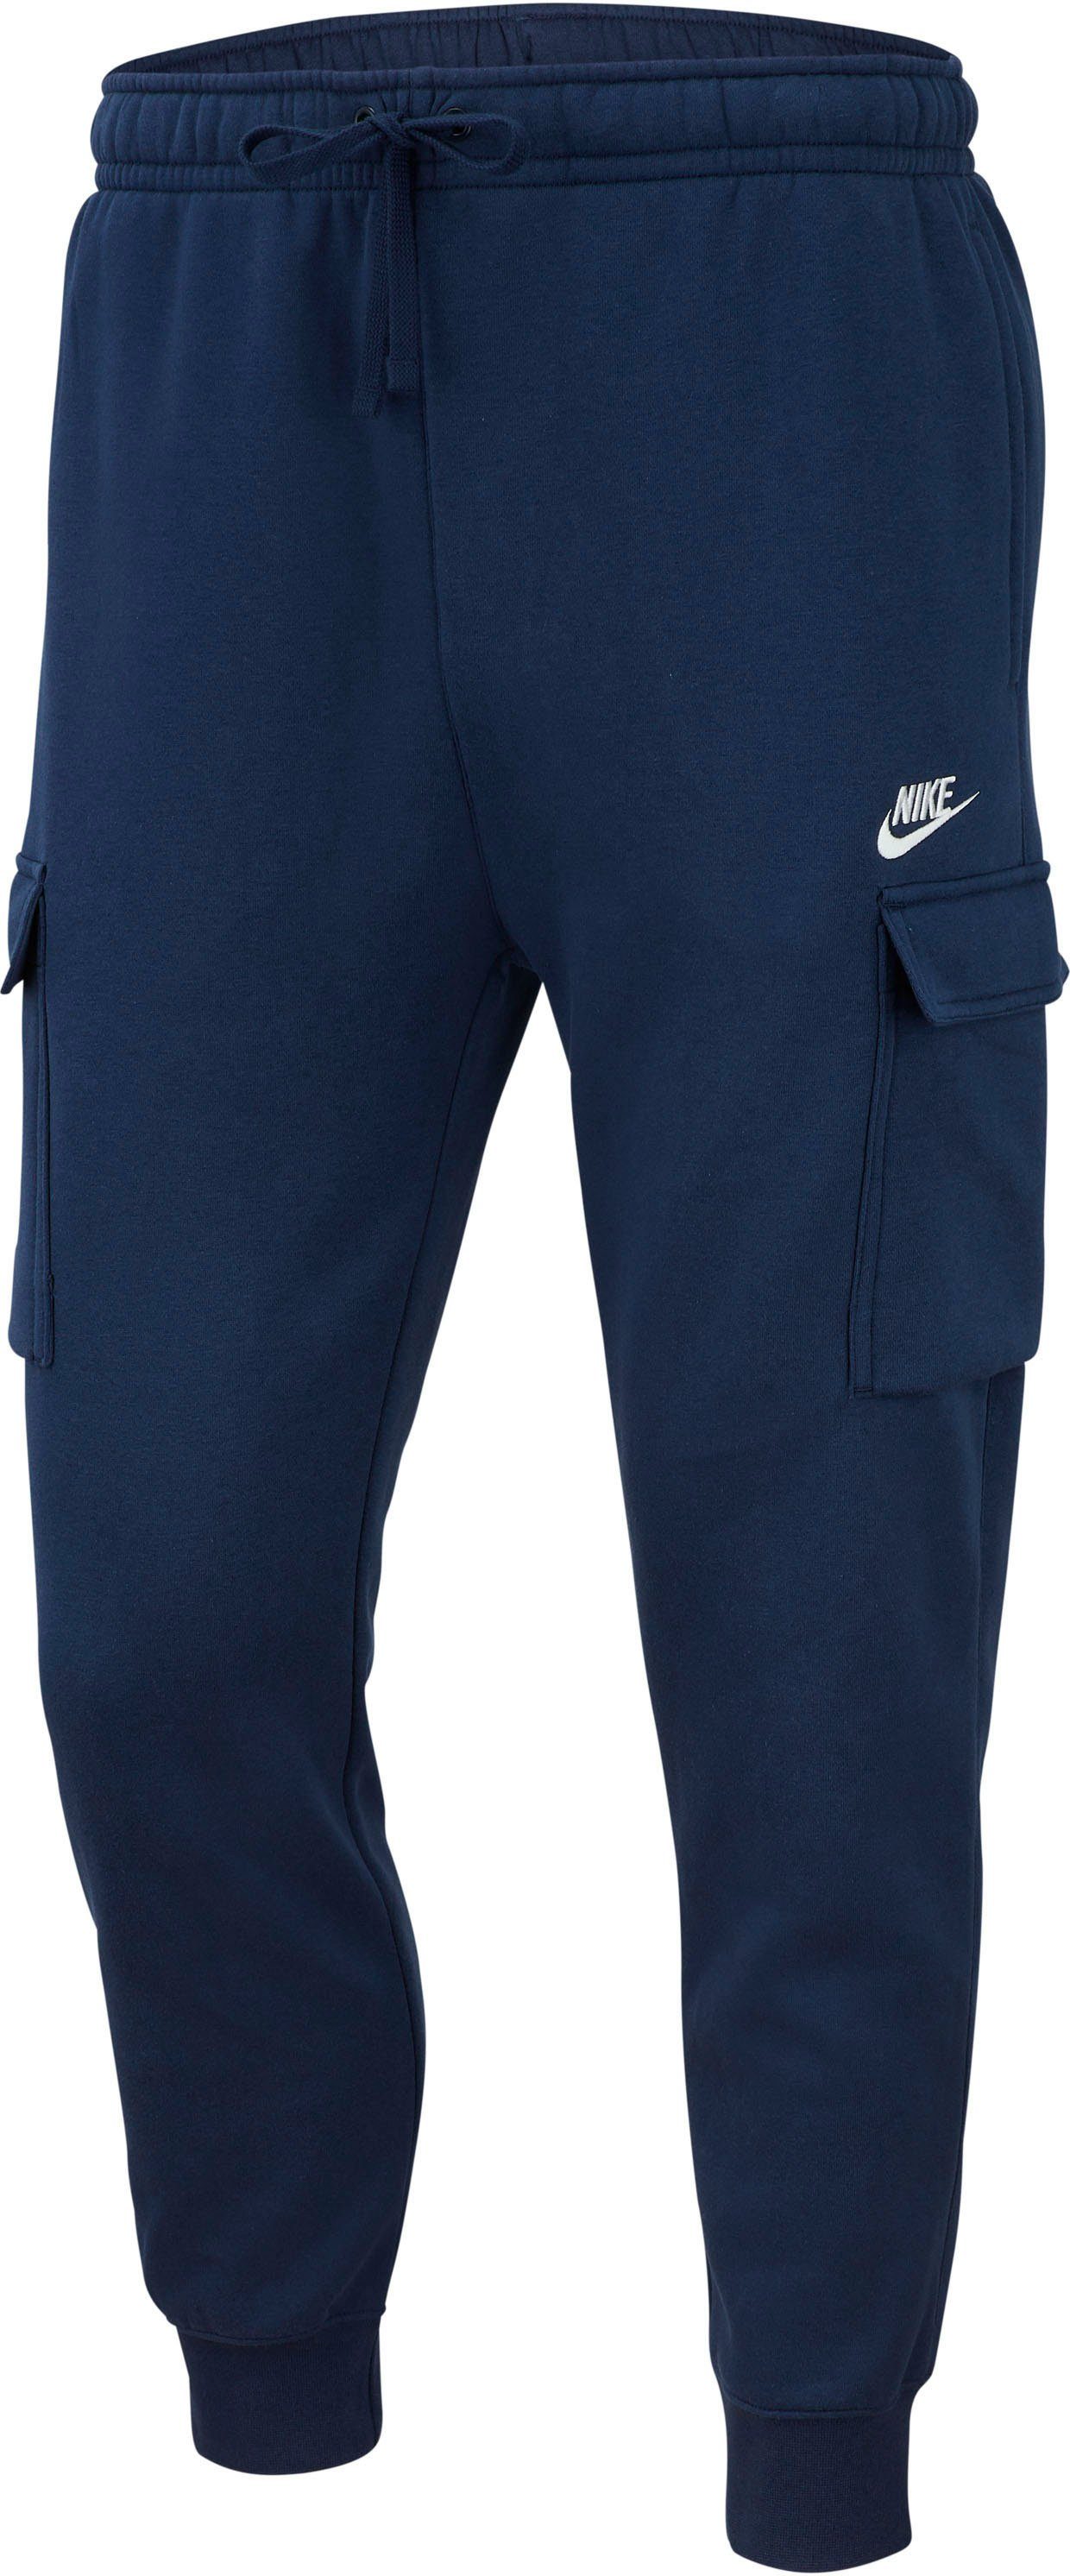 Jogginghose Sportswear FLEECE Nike marine MEN'S CARGO PANTS CLUB